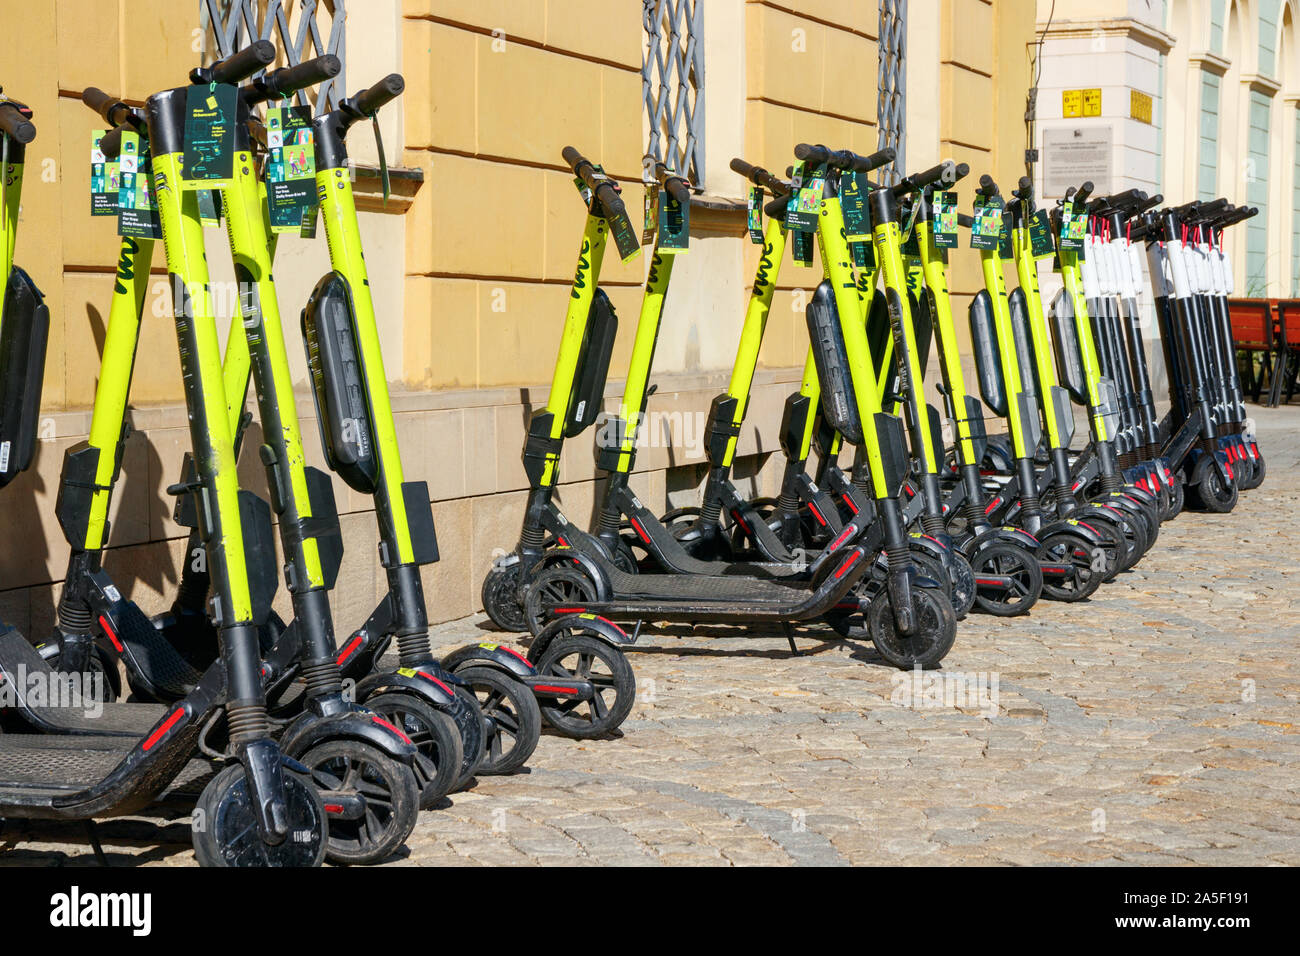 Große Anzahl von elektroroller (E-Scooter) für Roller Sharing von Hive und  Vogel in einer Reihe in der Nähe einer Wand geparkt. Wroclaw, Polen  Stockfotografie - Alamy